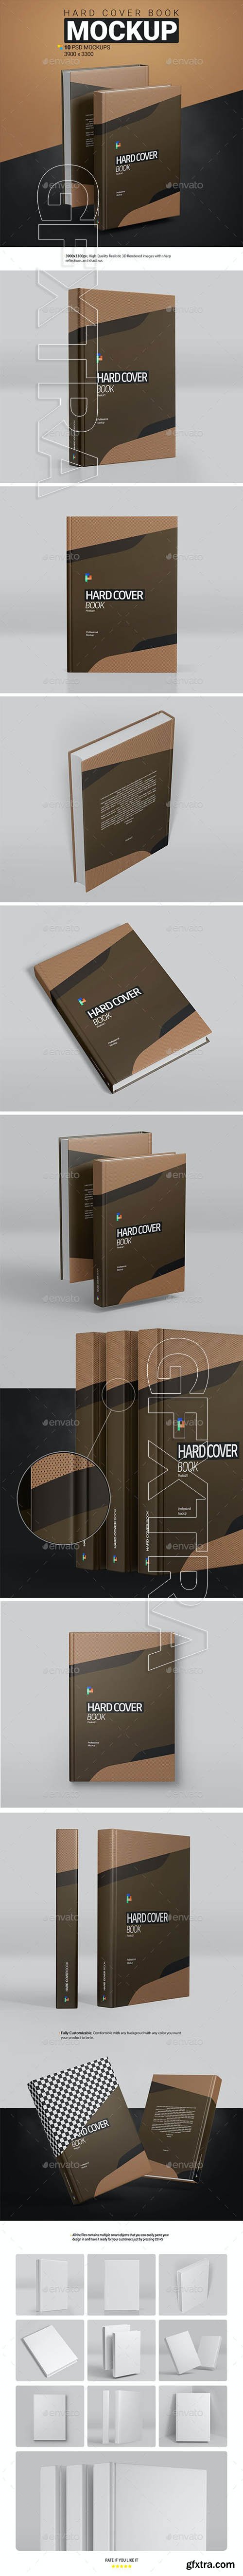 GraphicRiver - Hard Cover Book Mockup 30353249